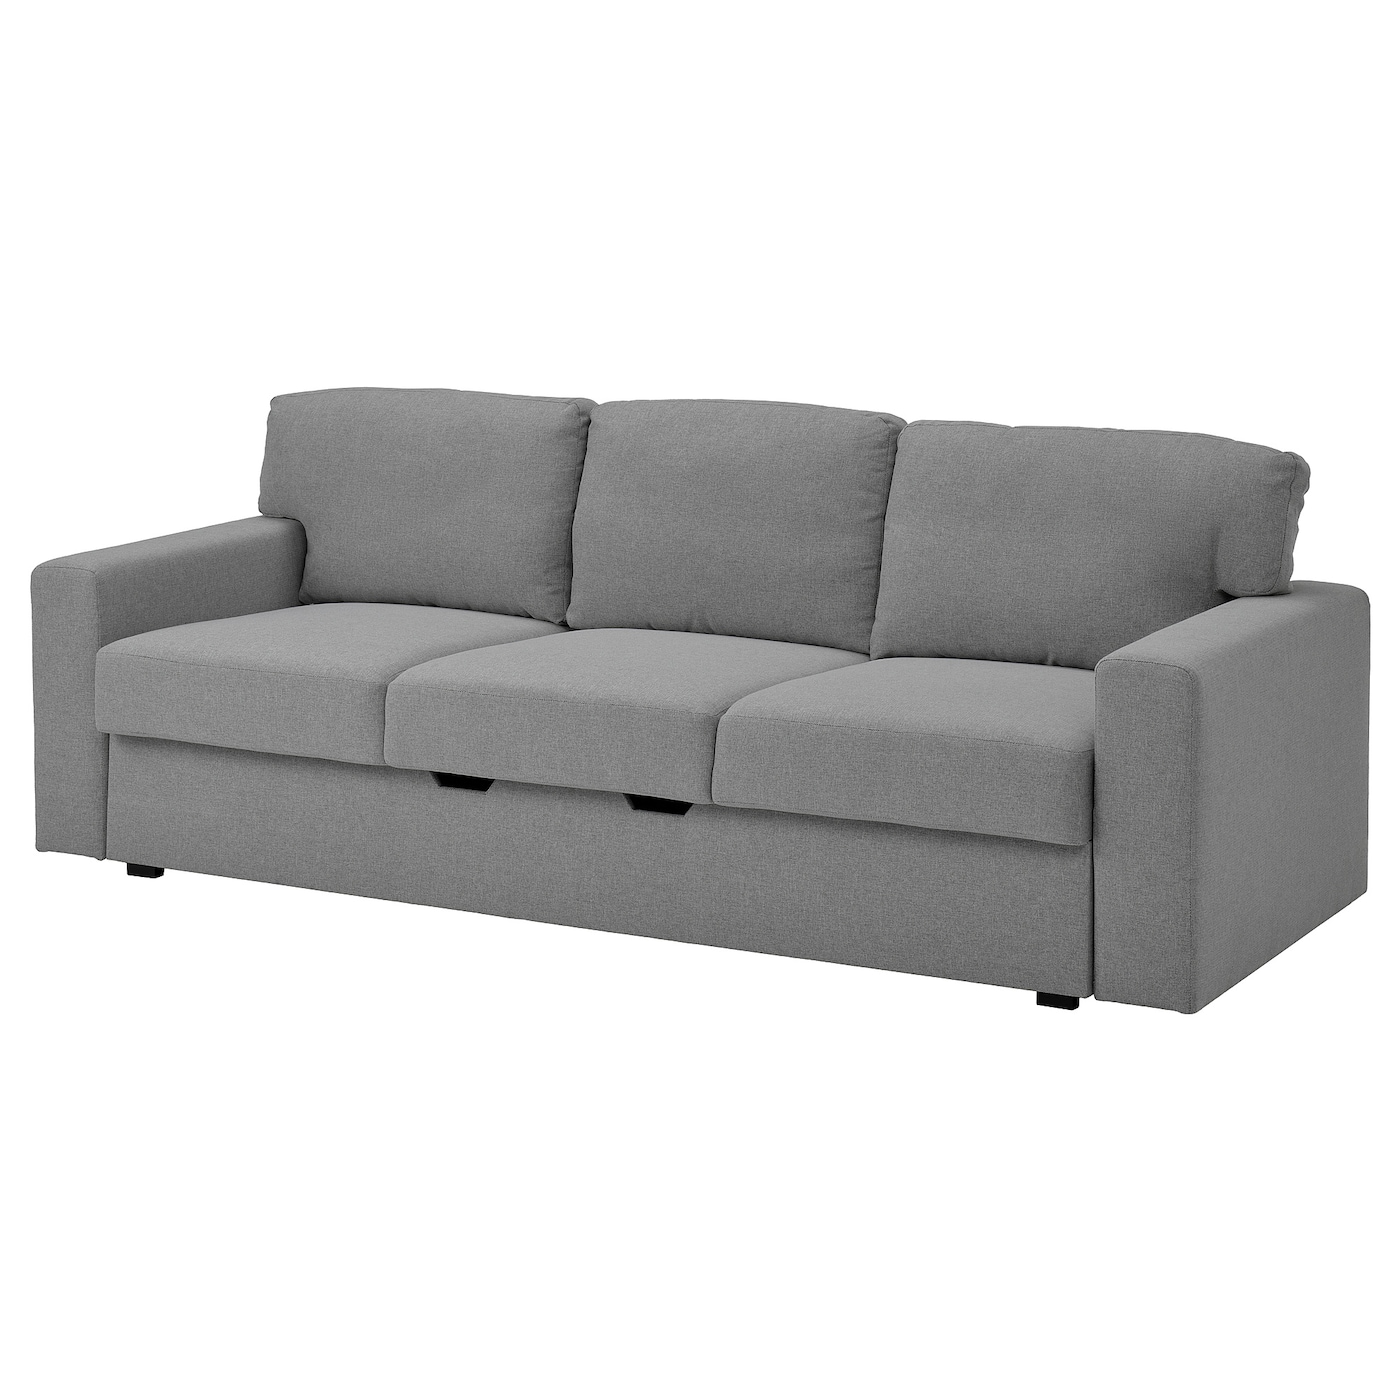 БОРСЛОВ 3-местный диван-кровать, Тибблби бежевый/серый BÅRSLÖV IKEA диван кровать балу java